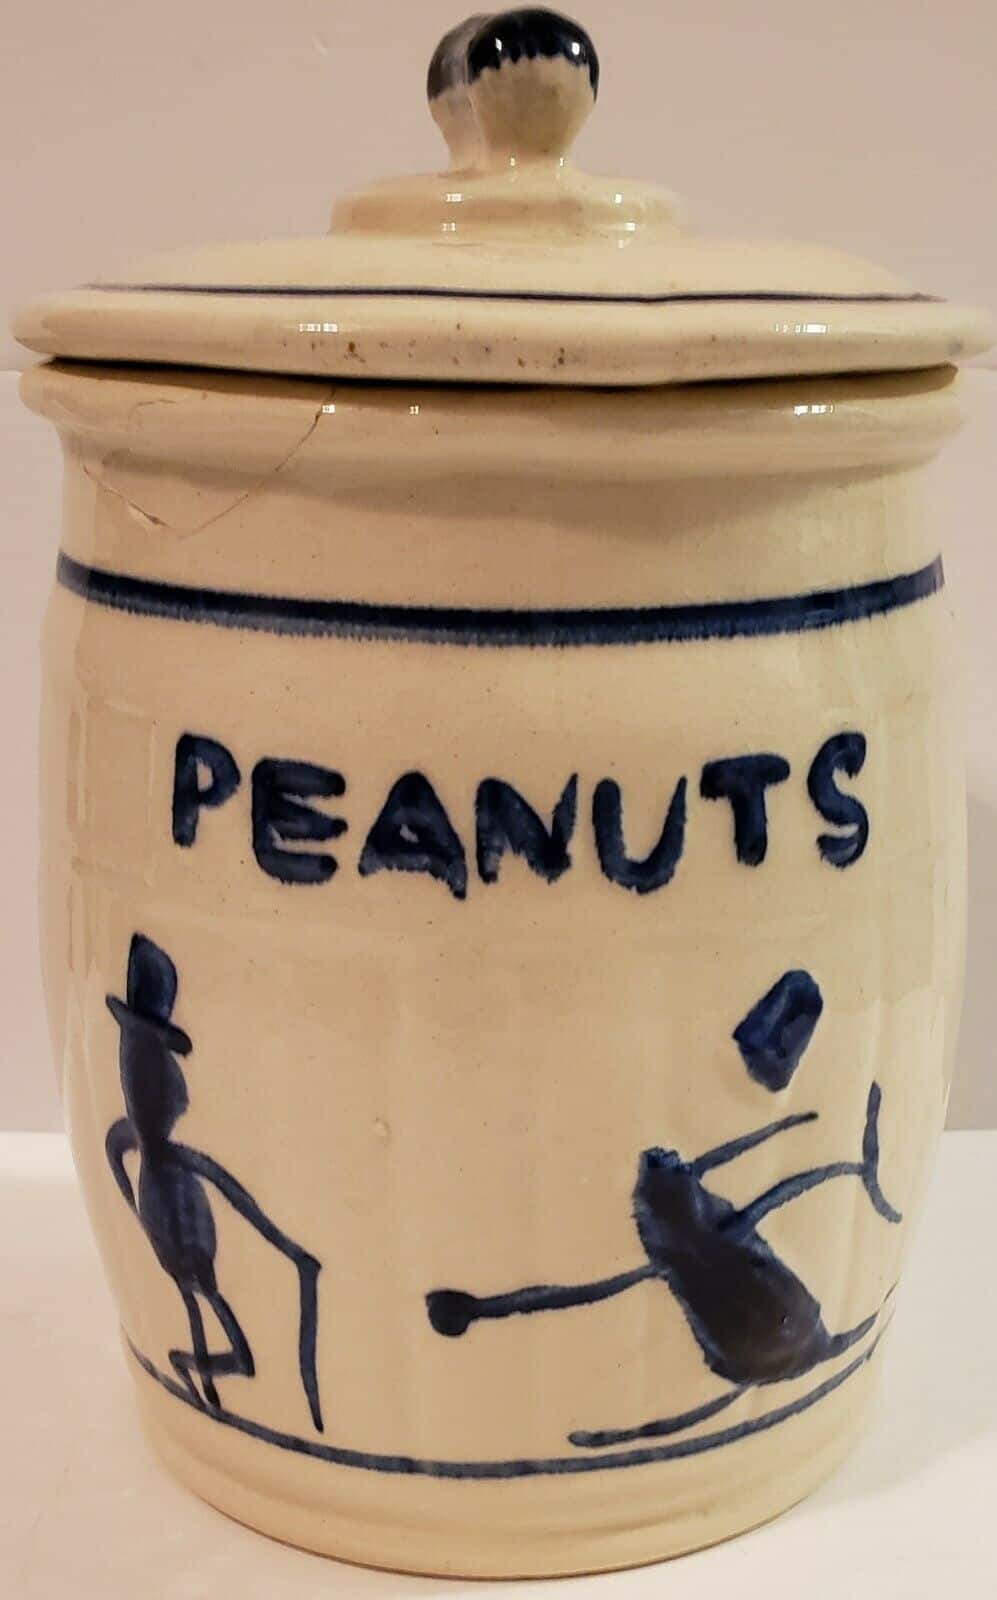 Pennant Planters Peanuts Ceramic Jar Antique Container